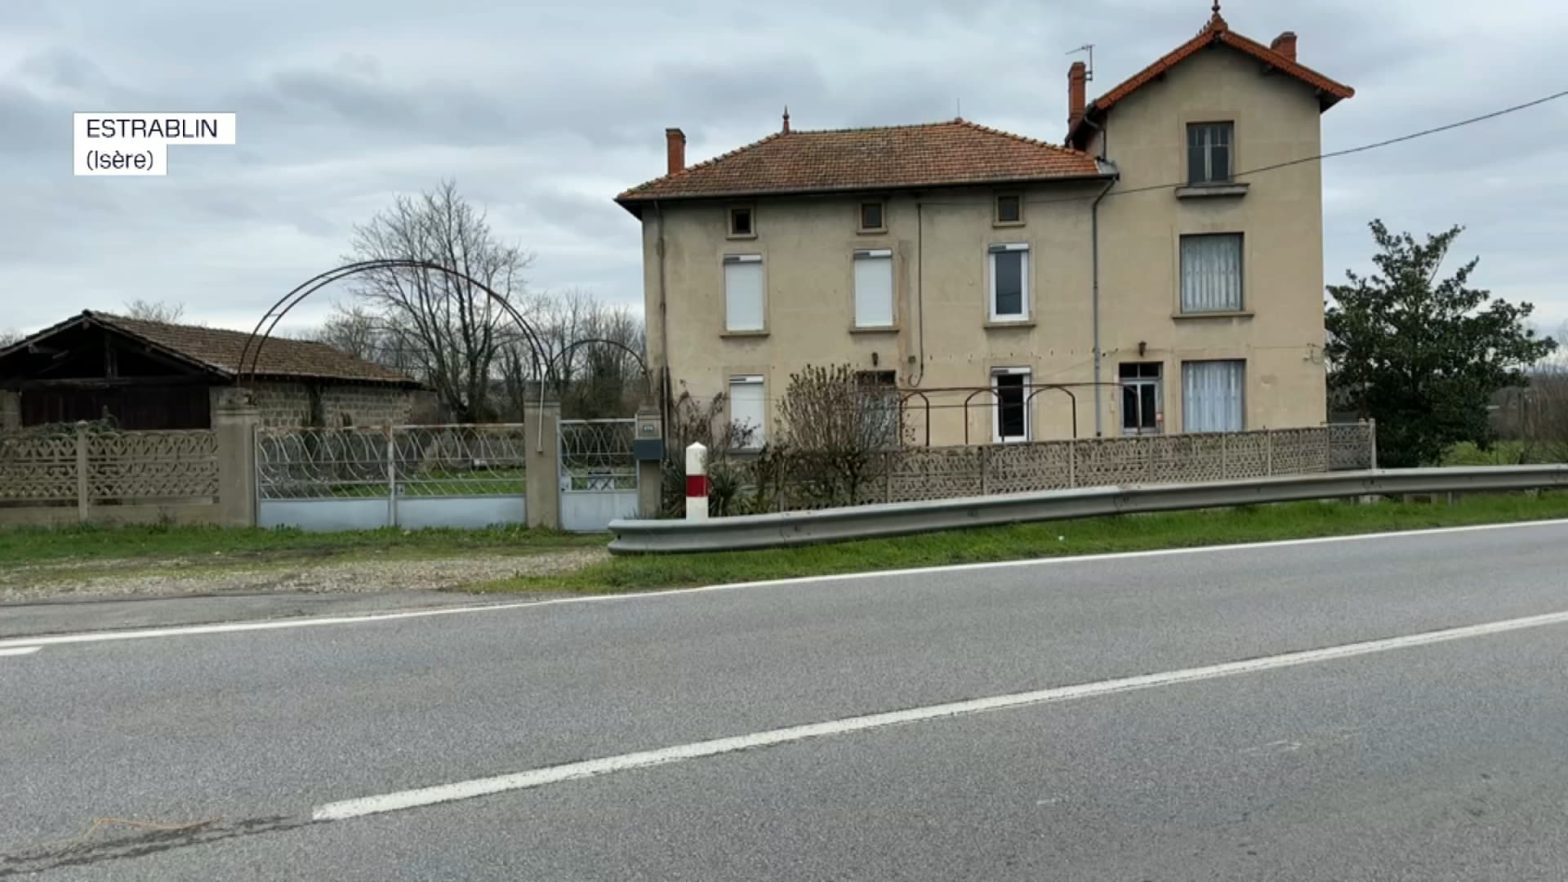 Isère: un homme de 60 ans tué de plusieurs coups de couteau à Estrablin, son frère suspecté